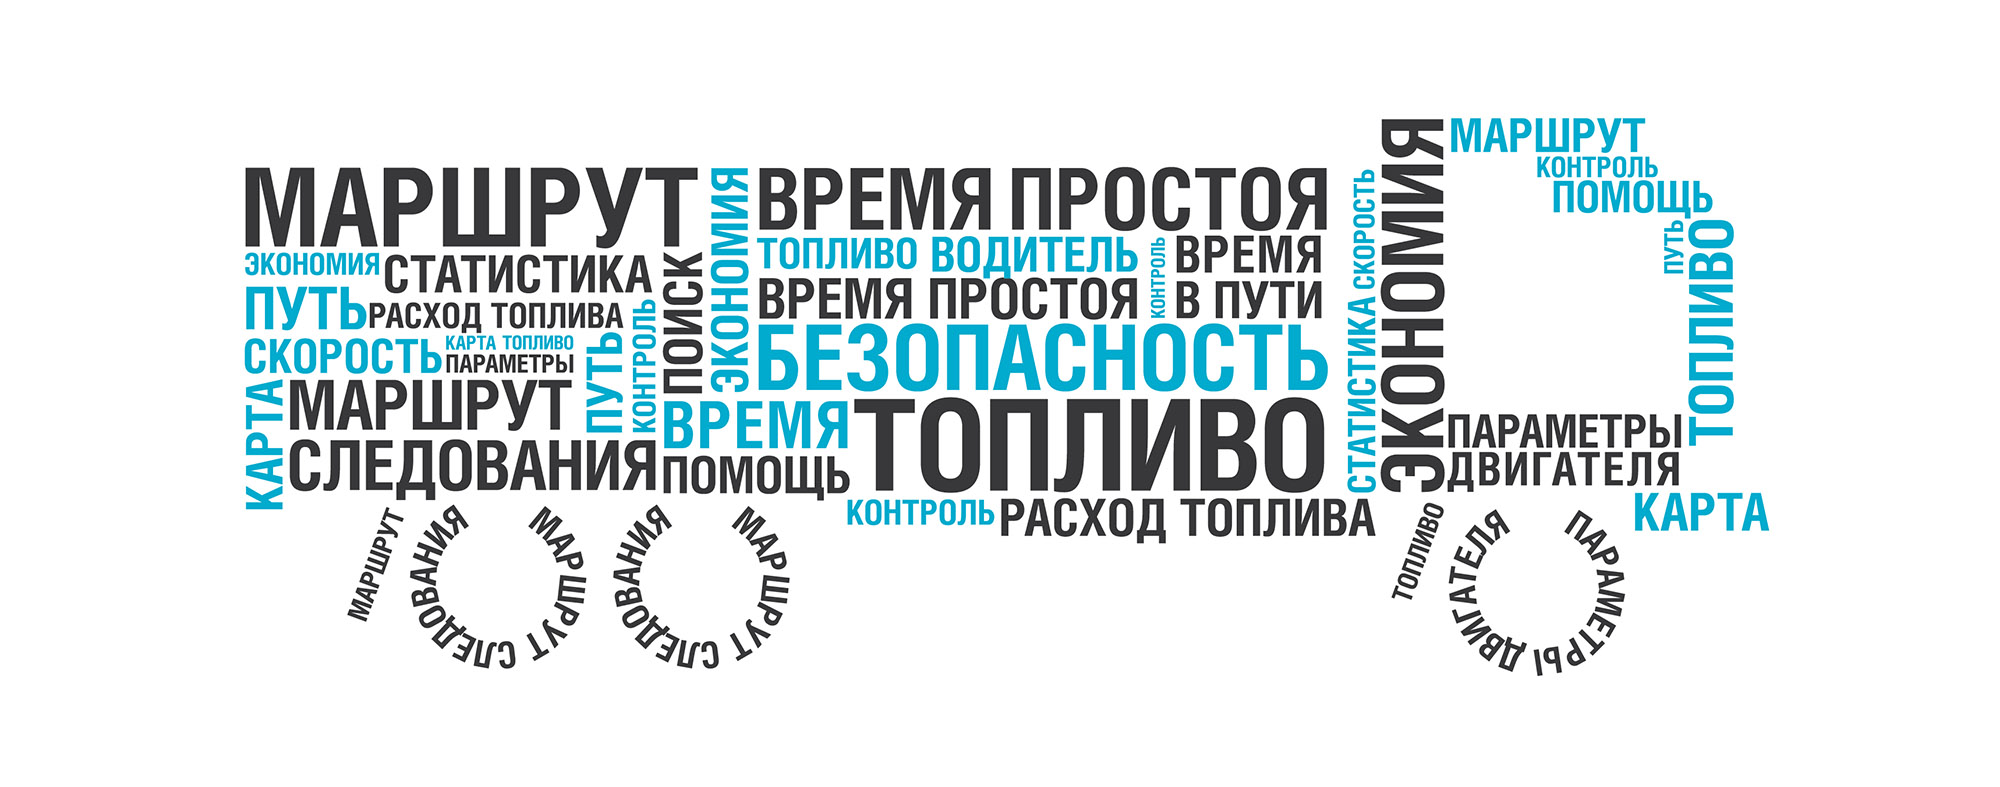 Типографический дизайн. Дизайн полиграфии: многостраничный буклет для компании «Автоскан». auto-scan.ru Инфографика и типографика в дизайне буклета. Брендинговое агентство WeDESIGN | МыДИЗАЙН, агентство мыдизайн, агентство wedesign, дизайн-агентство МыДИЗАЙН, креативное агентство, дизайн студия, wedesign, мыдизайн, мы, www.мыдизайн.рф, www.wedesigngroup.ru, info@wedesigngroup.ru, +7 (812) 924-59-96